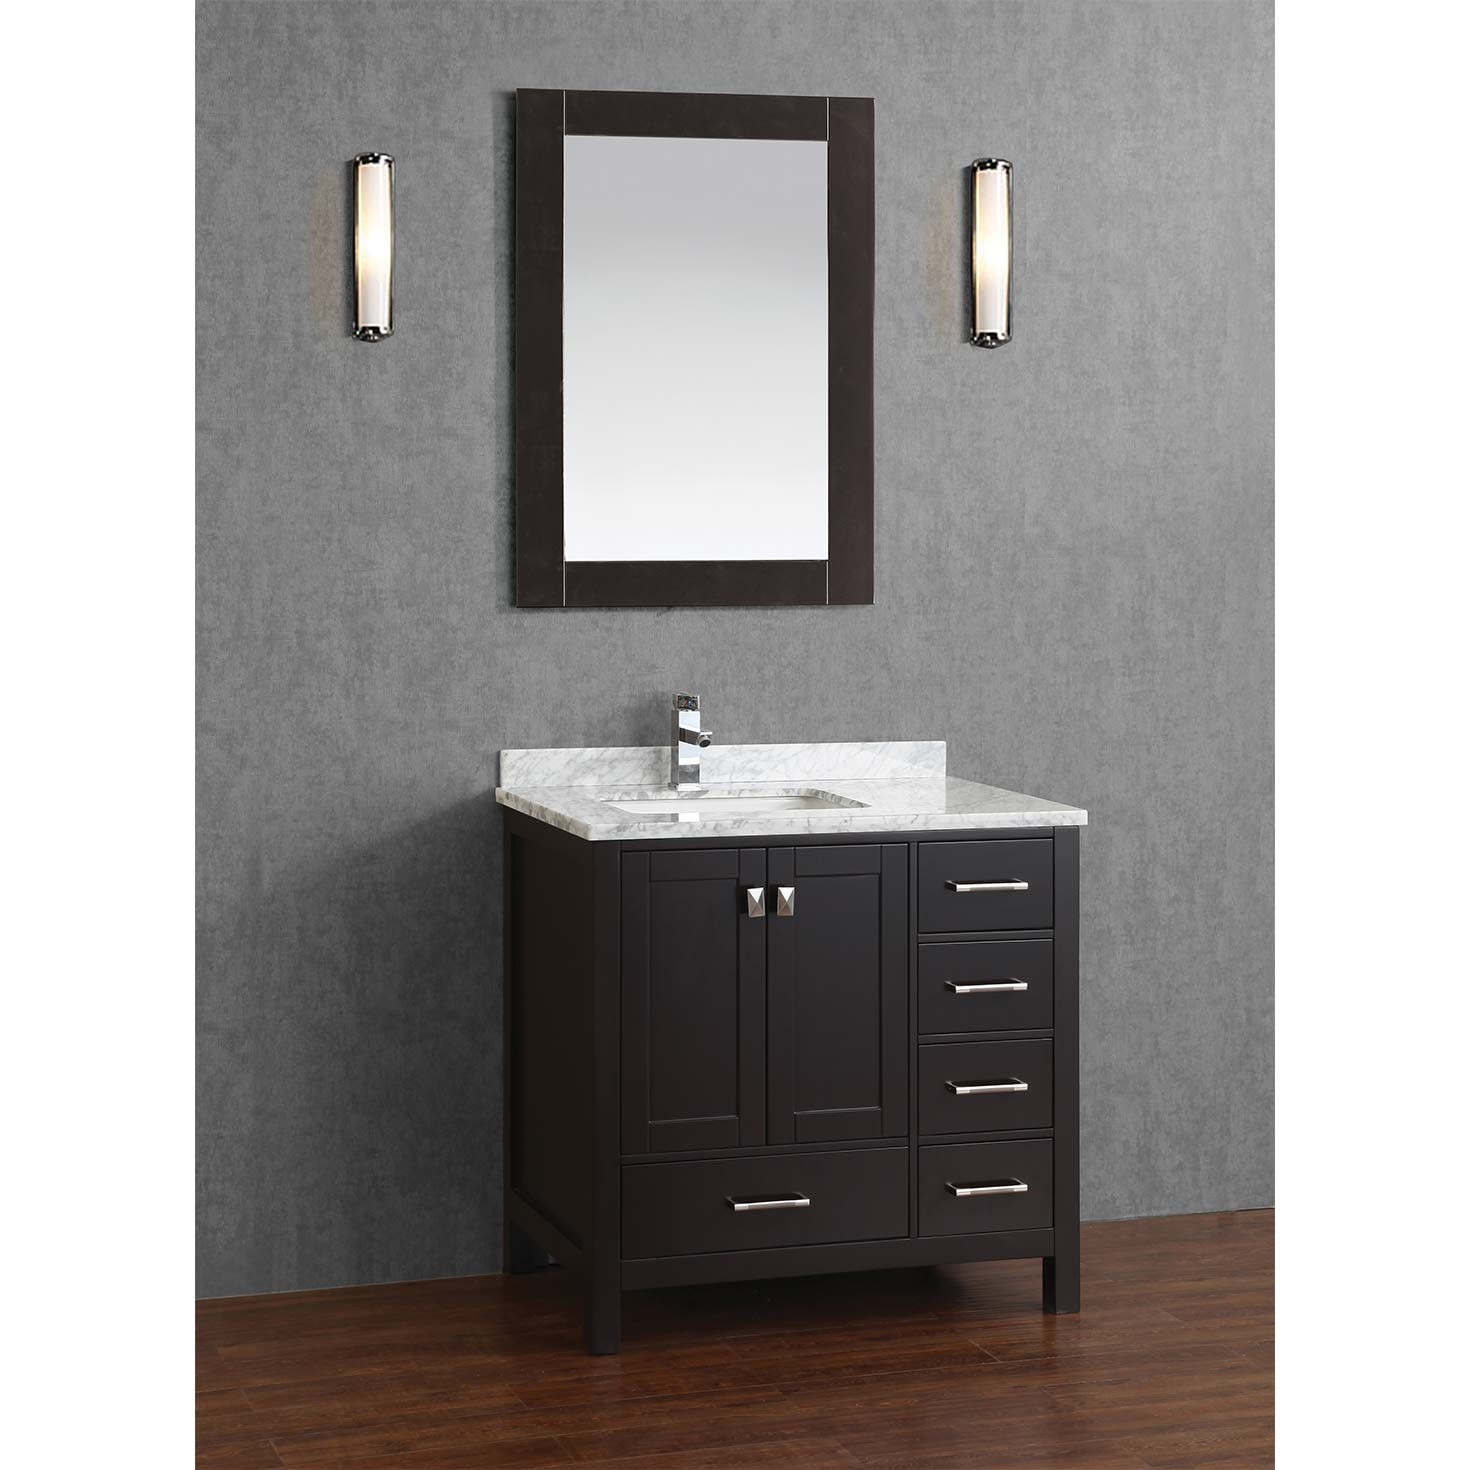 Real Wood Bathroom Vanities
 Buy Vincent 36 Inch Solid Wood Single Bathroom Vanity in